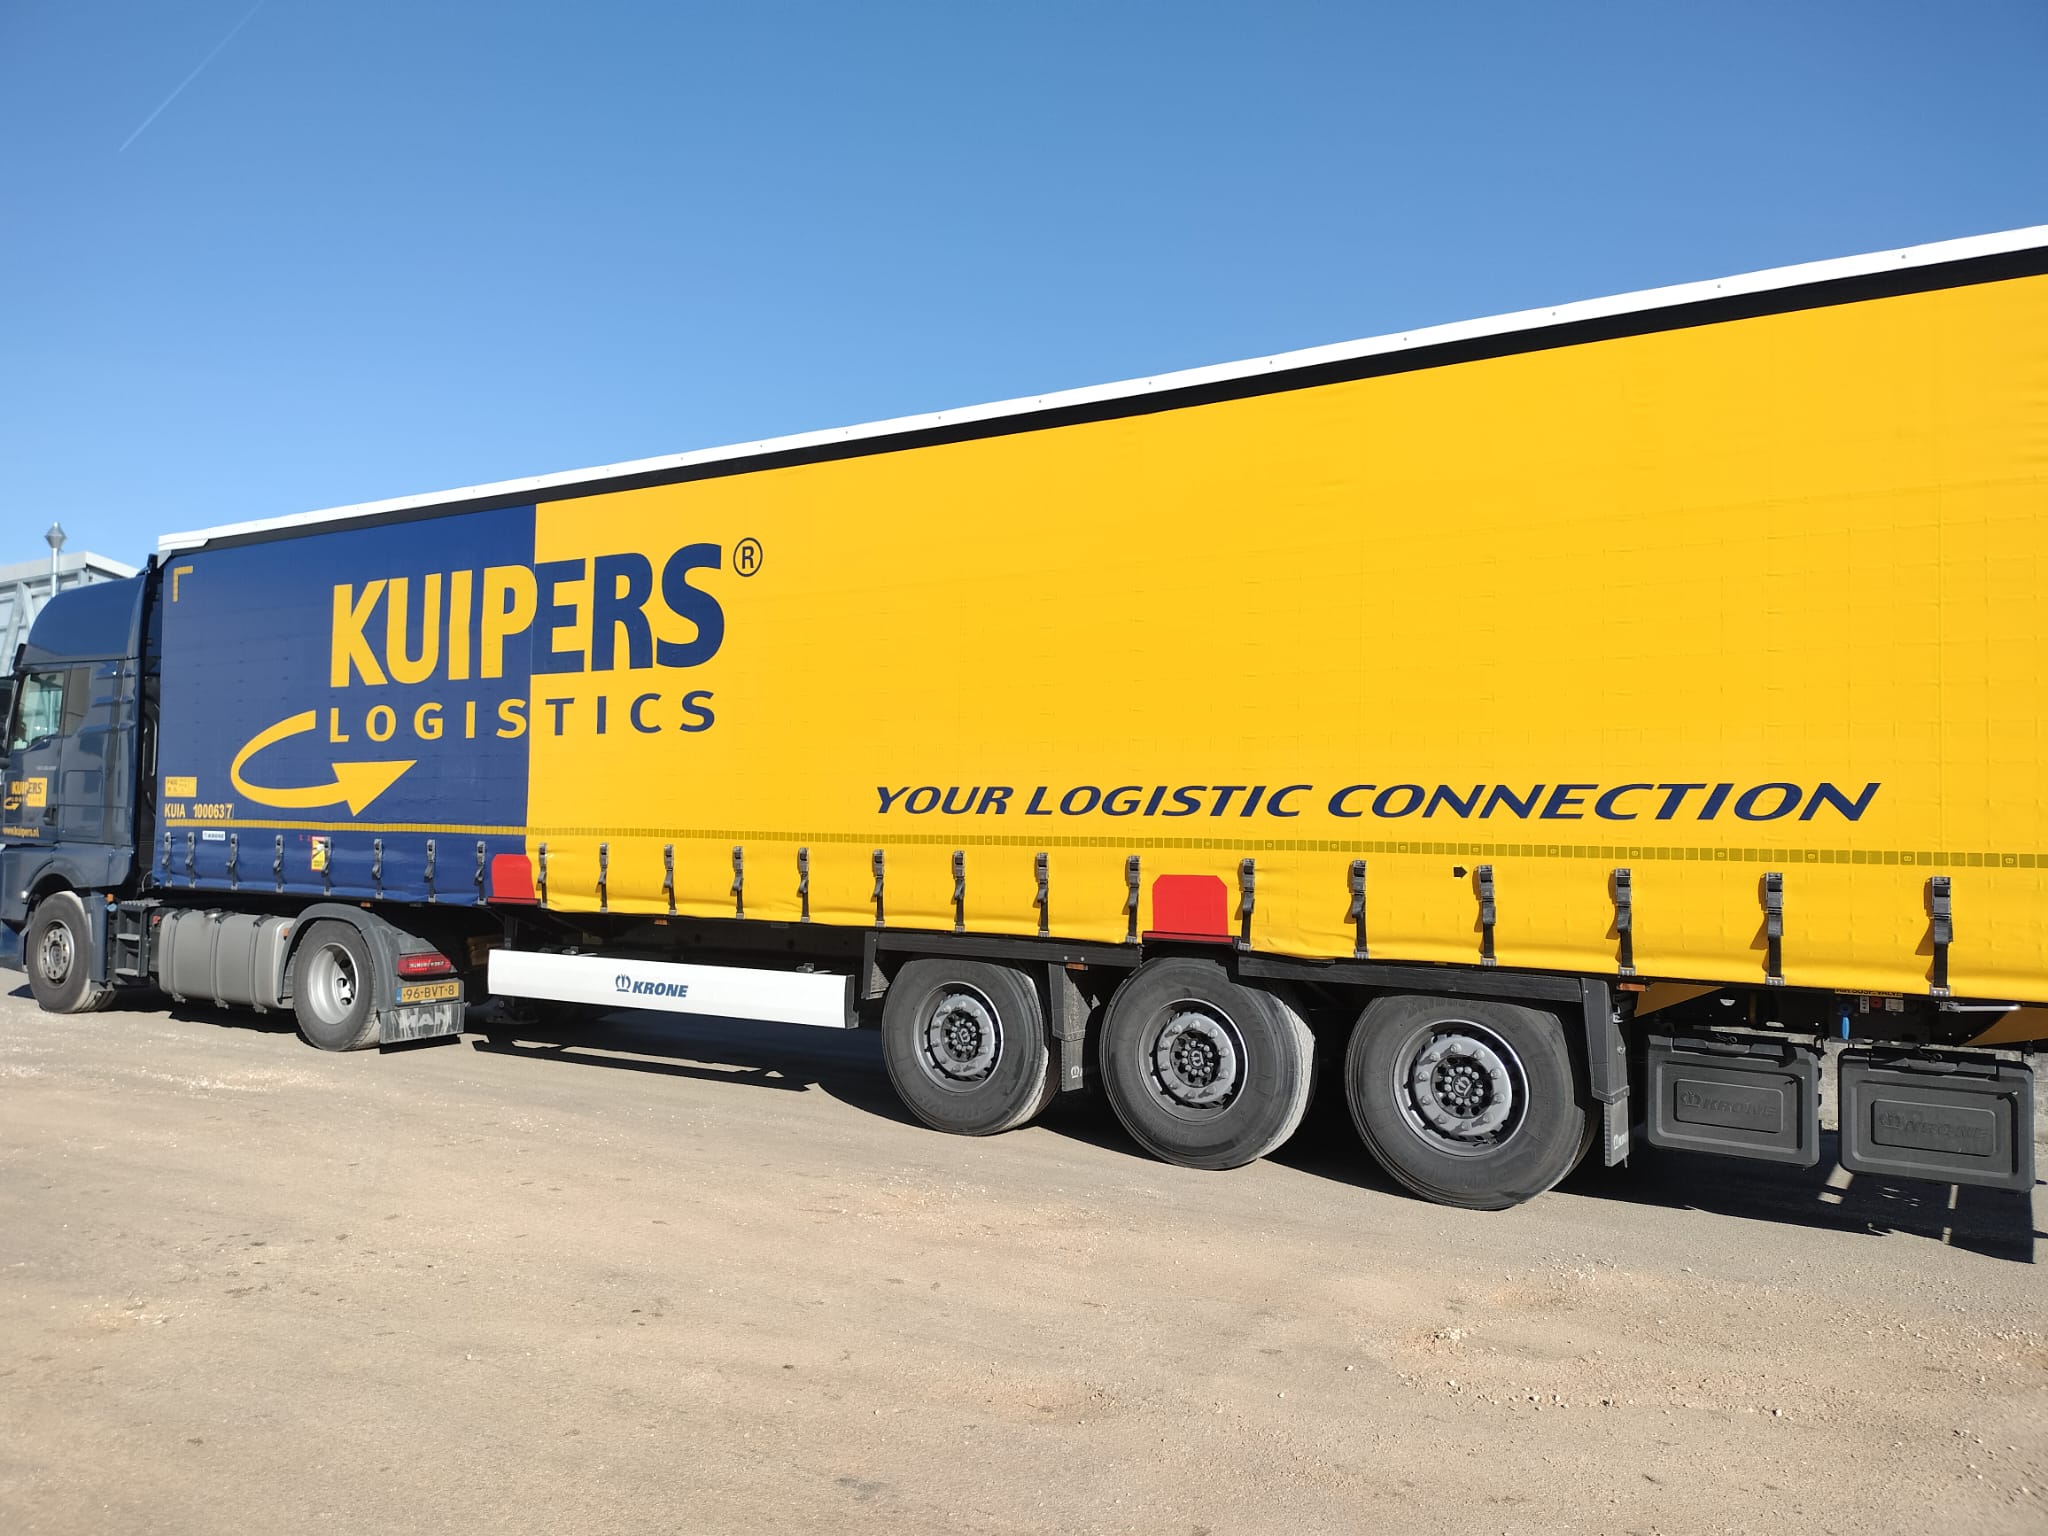 Kuypers Logistics in Italia con 10 nuovi semirimorchi Krone • TTM.nl